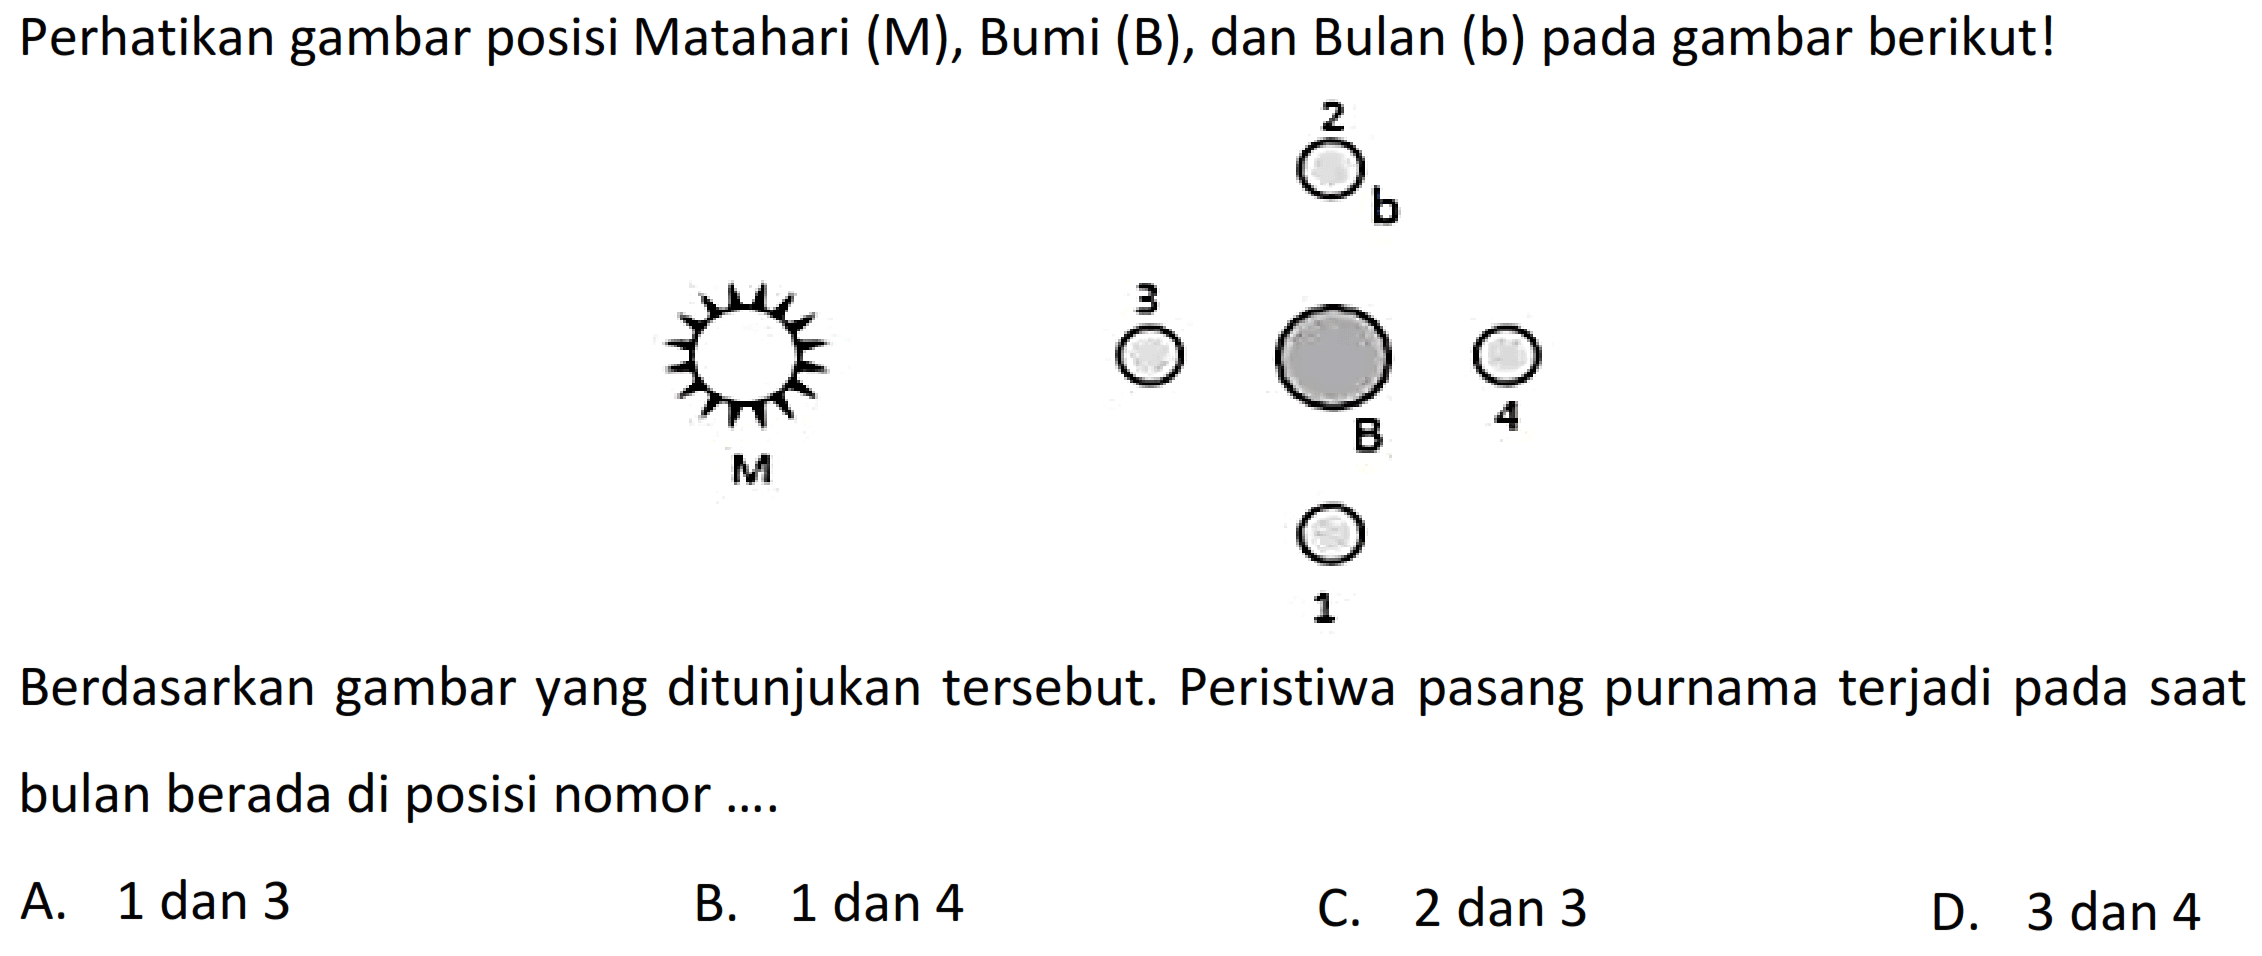 Perhatikan gambar posisi Matahari (M), Bumi (B), dan Bulan (b) pada gambar berikut!
 b 
Berdasarkan gambar yang ditunjukan tersebut. Peristiwa pasang purnama terjadi pada saat bulan berada di posisi nomor ....
A. 1 dan 3
B. 1 dan 4
C. 2 dan 3
D. 3 dan 4